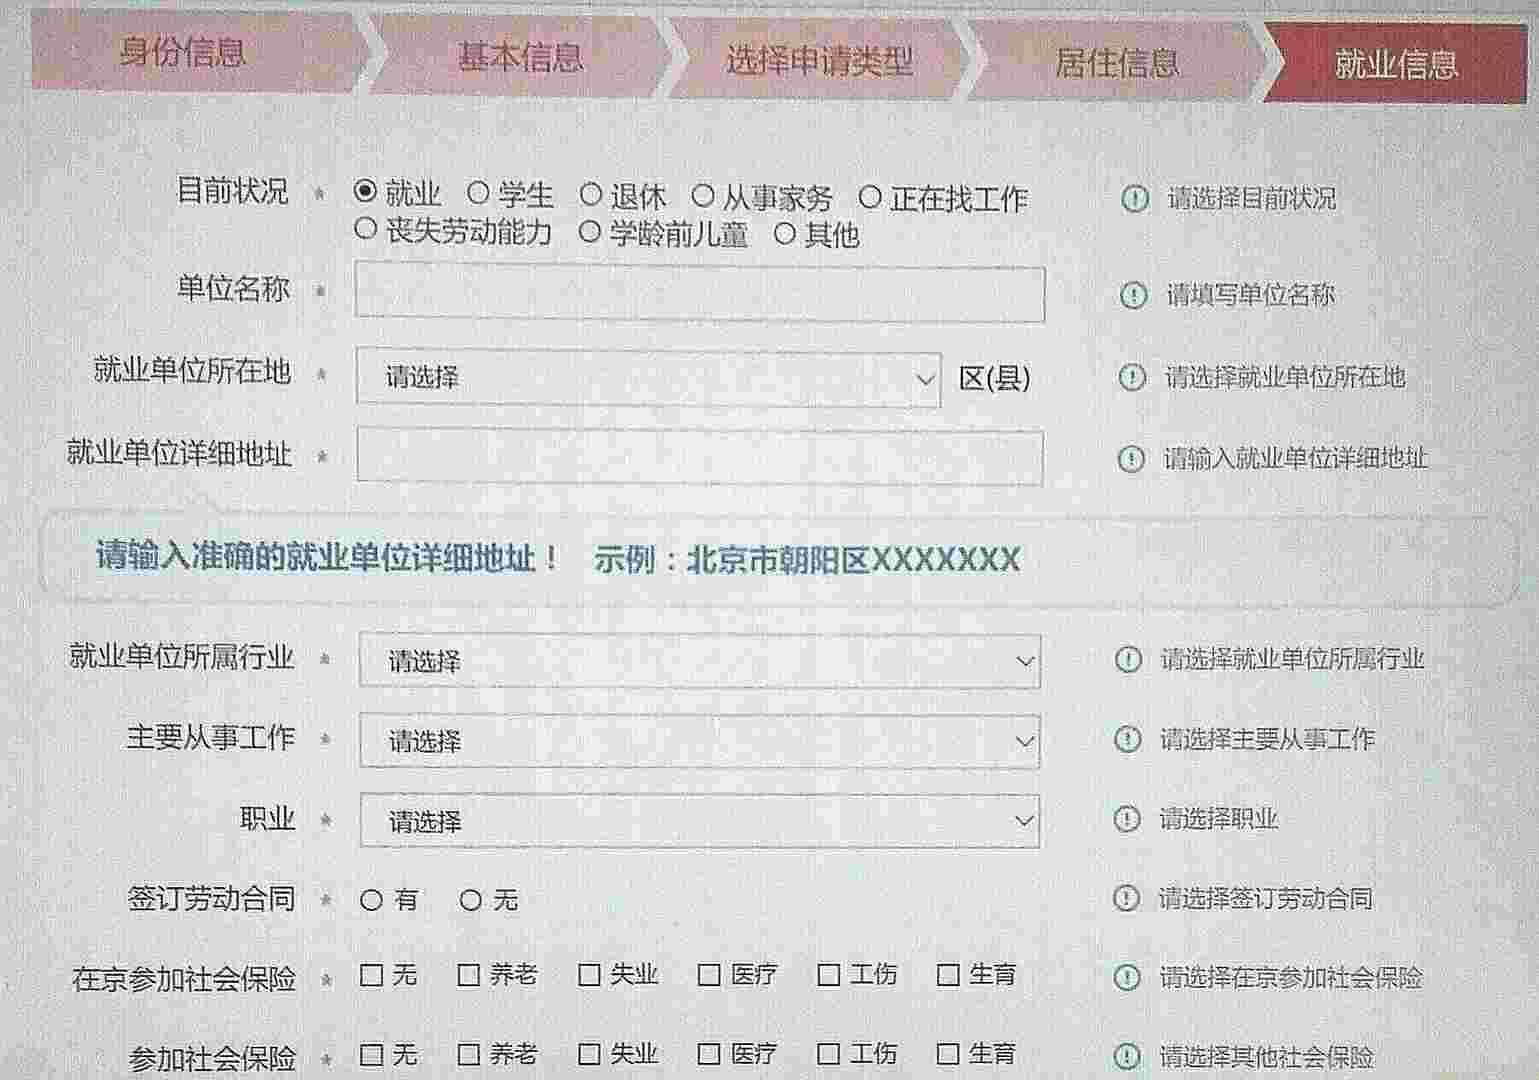 北京市居住证今起可网上申请 图文详解具体办理流程